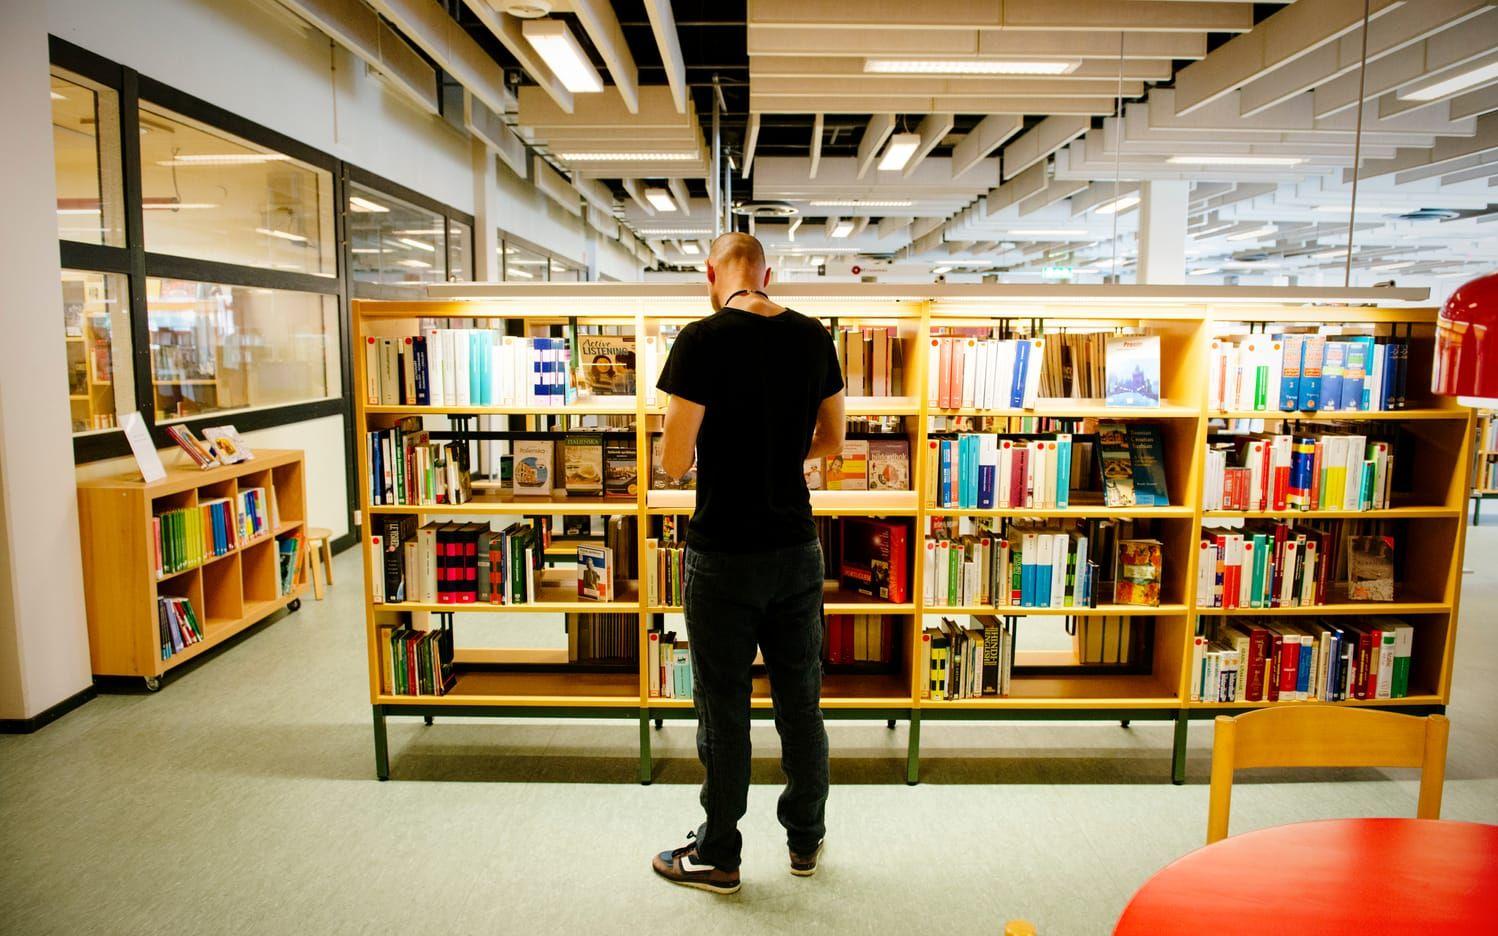 Biblioteket i Frölunda Kulturhus.
